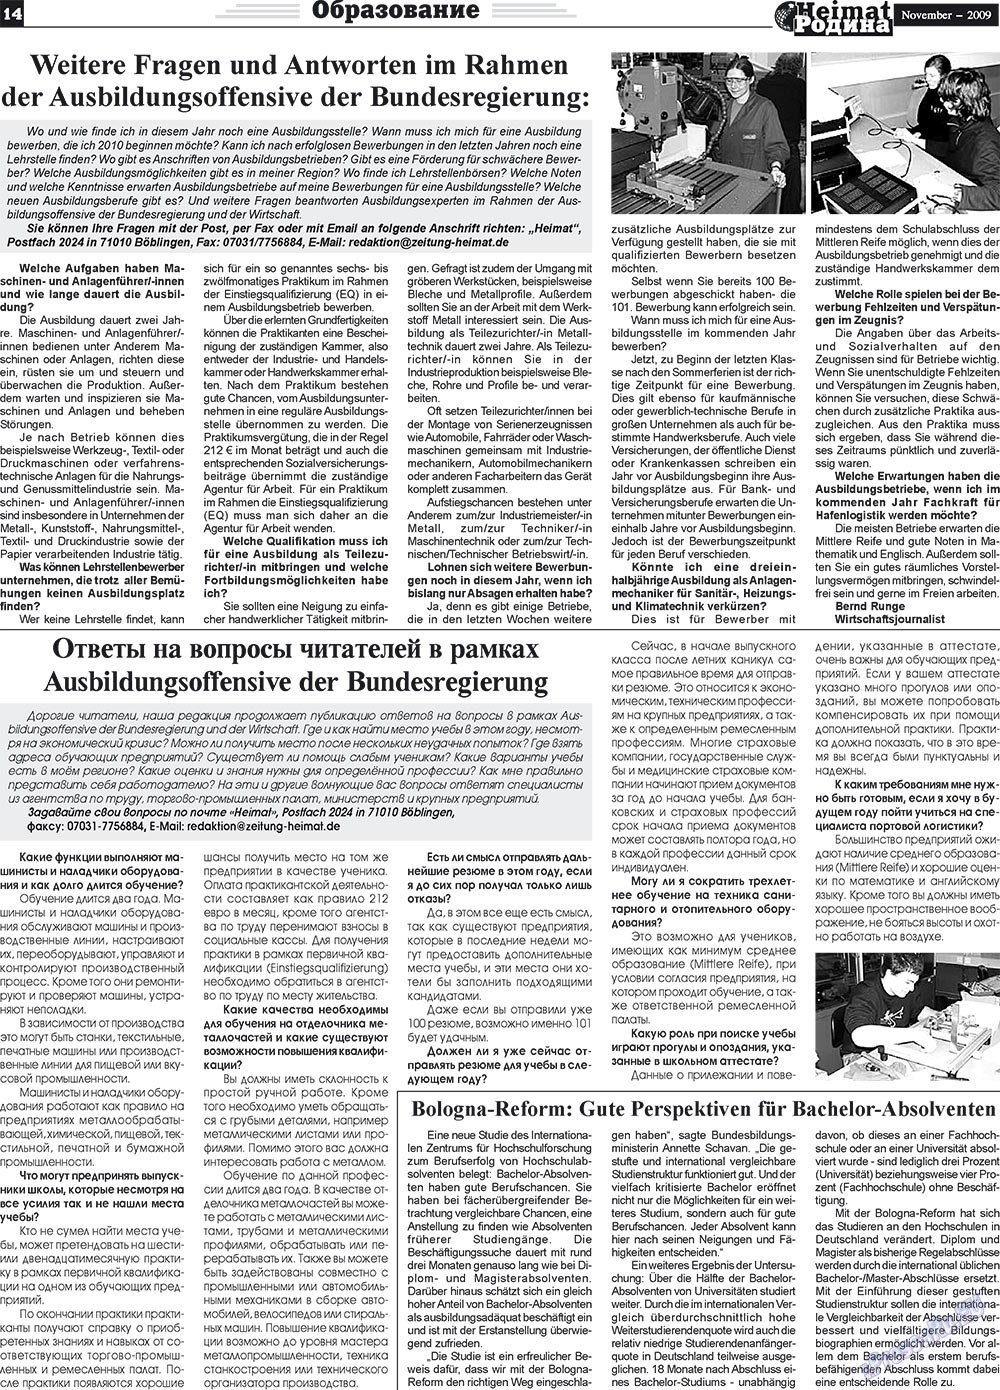 Heimat-Родина (газета). 2009 год, номер 11, стр. 14